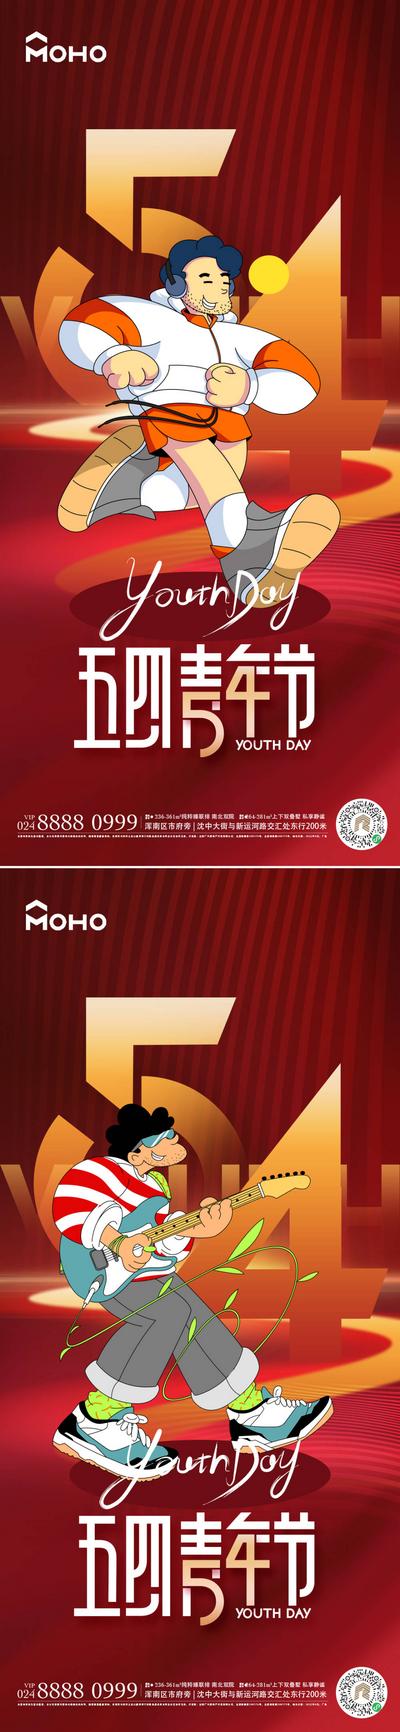 南门网 广告 运动 五四 青年节 54 青年 活力 放假 游玩 年轻 少年